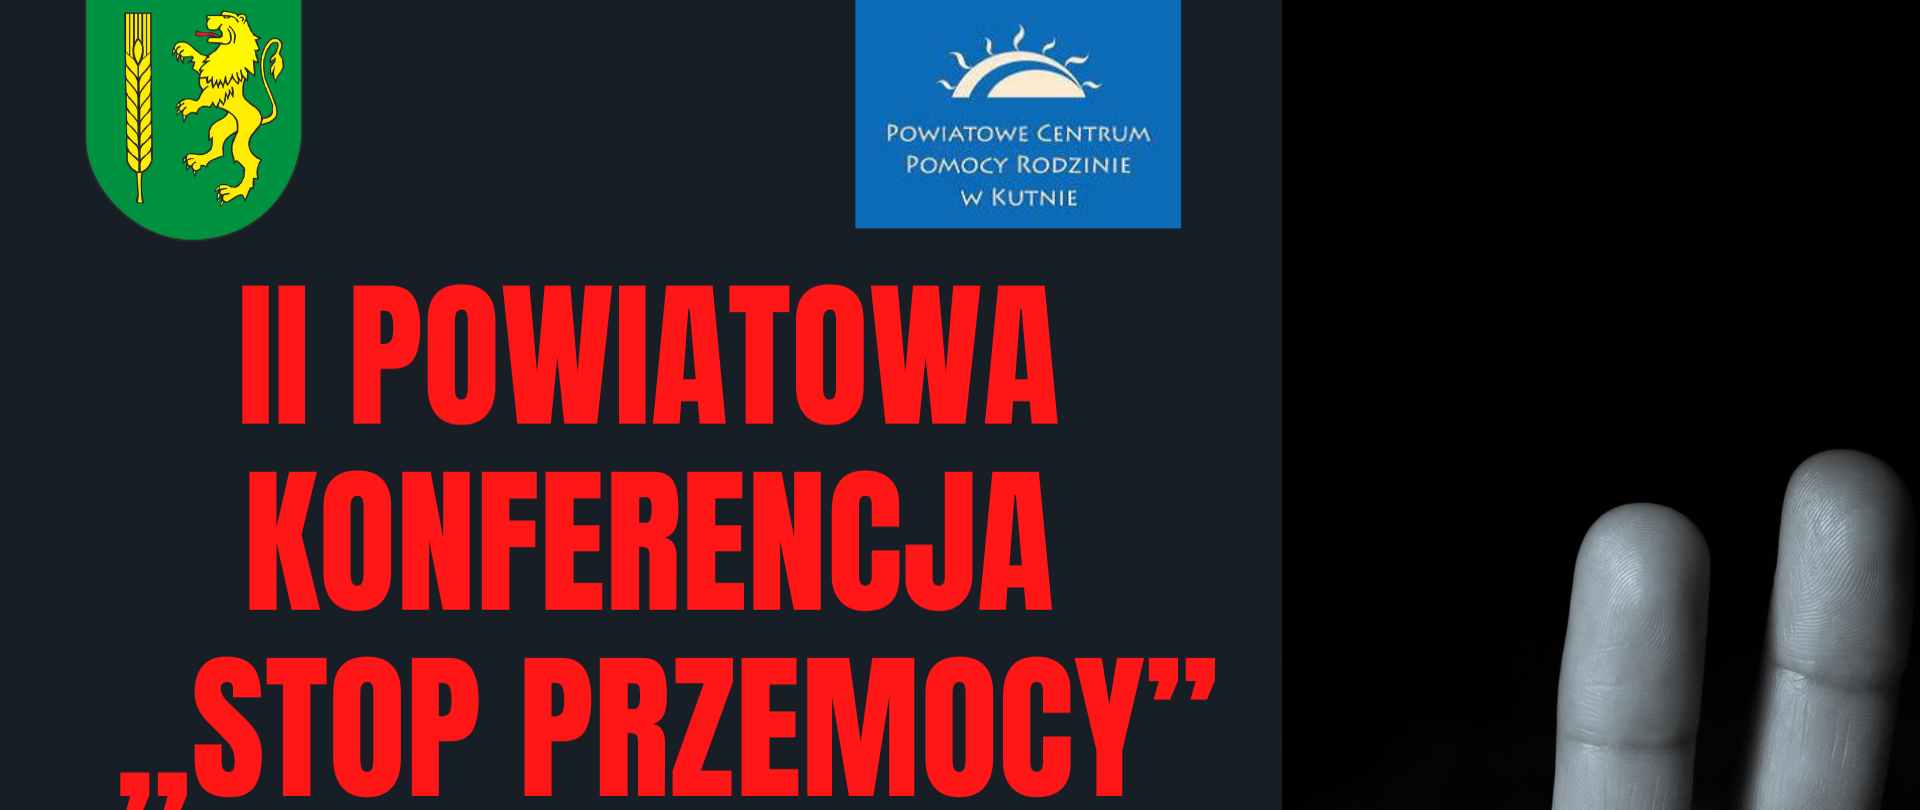 Program II Powiatowej Konferencji „Stop Przemocy”, która odbędzie się w dniu 24 listopada 2023 r. w sali konferencyjnej Zespołu Szkół Nr 1 im. Stanisława Staszica w Kutnie ul. Oporowska 7